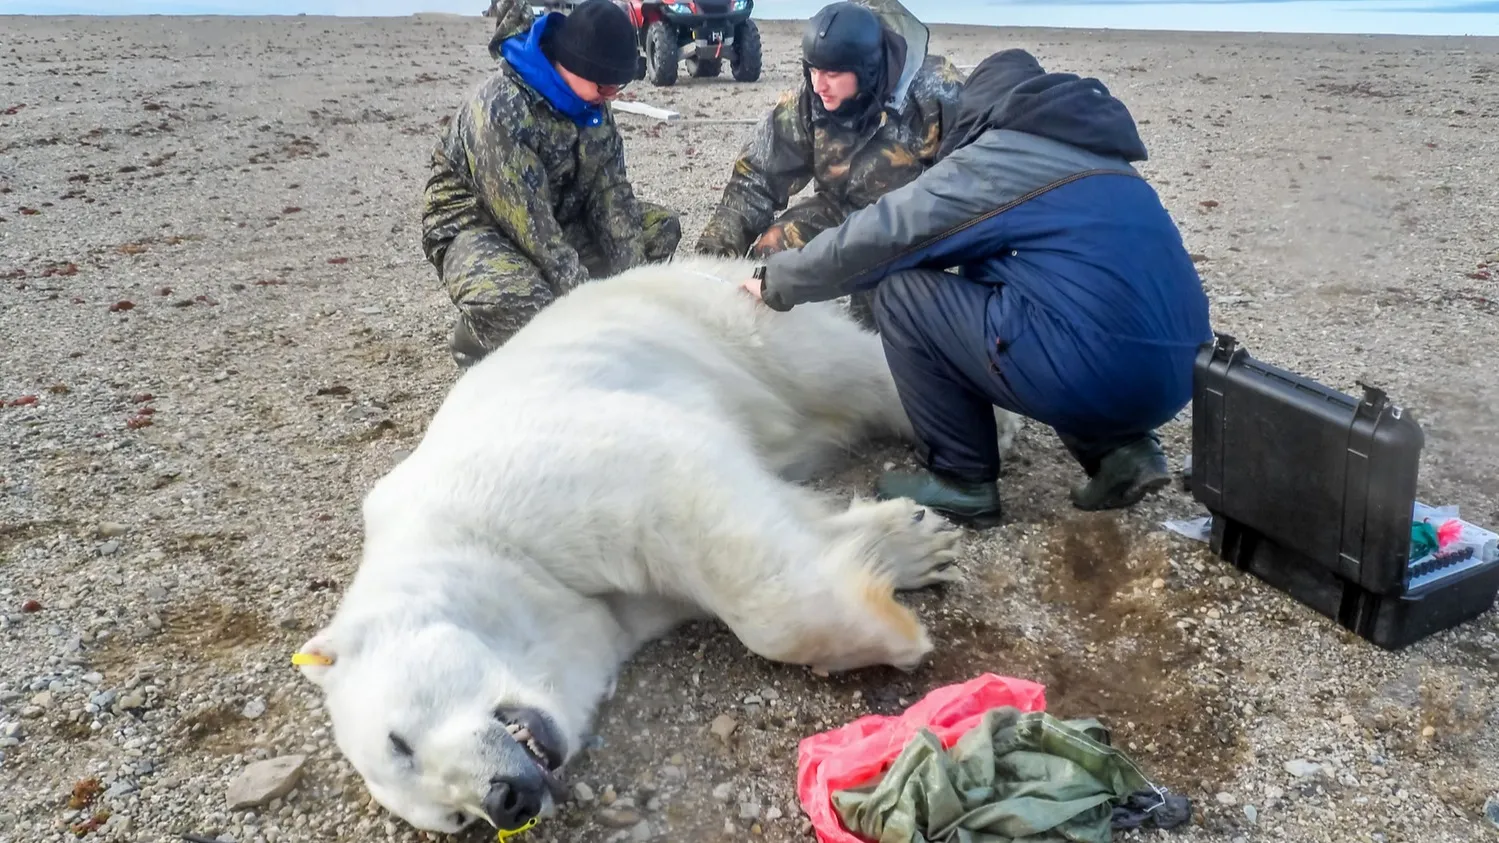 Напугавшего кочевников медведя отвезли подальше от людей. Фото: Igor Batenev / Shutterstock / Fotodom